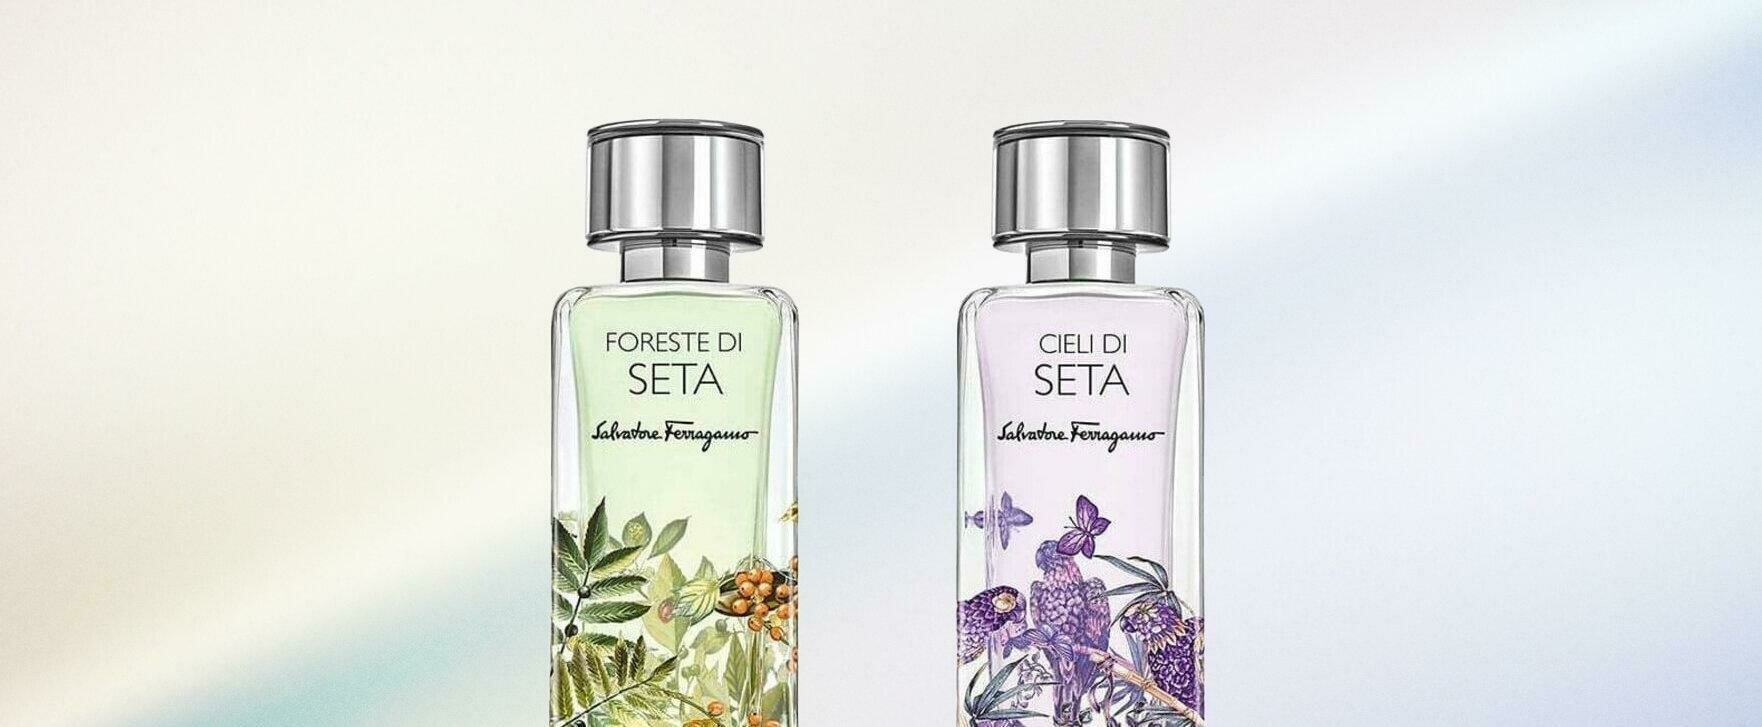 A Tribute to Silk: Salvatore Ferragamo's New Unisex Fragrances "Foreste di Seta" and "Cieli di Seta" 